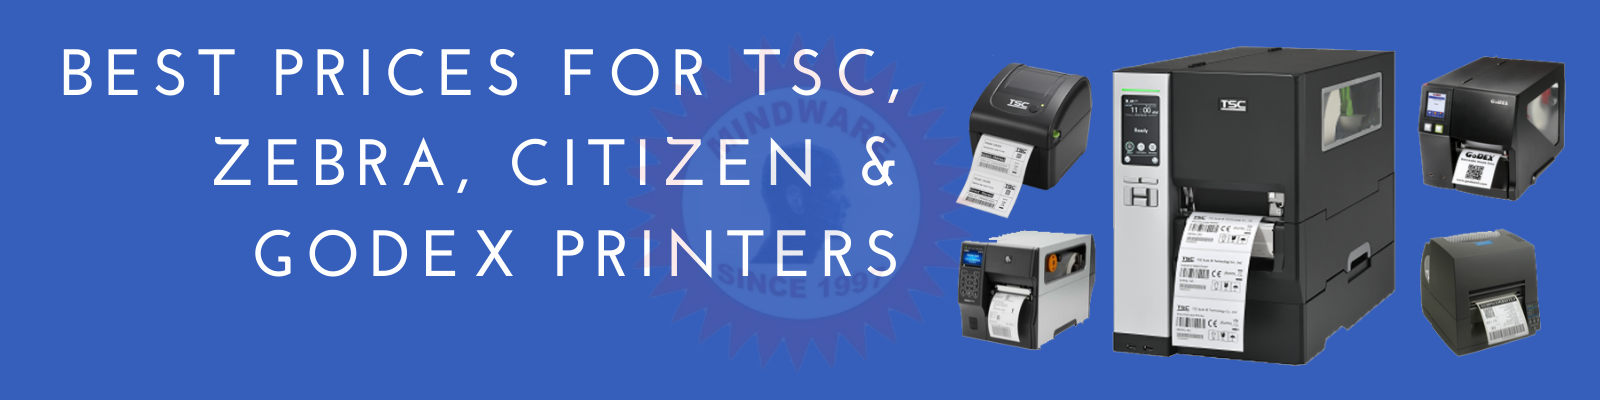 Best prices for tsc, zebra, citizen, godex printers